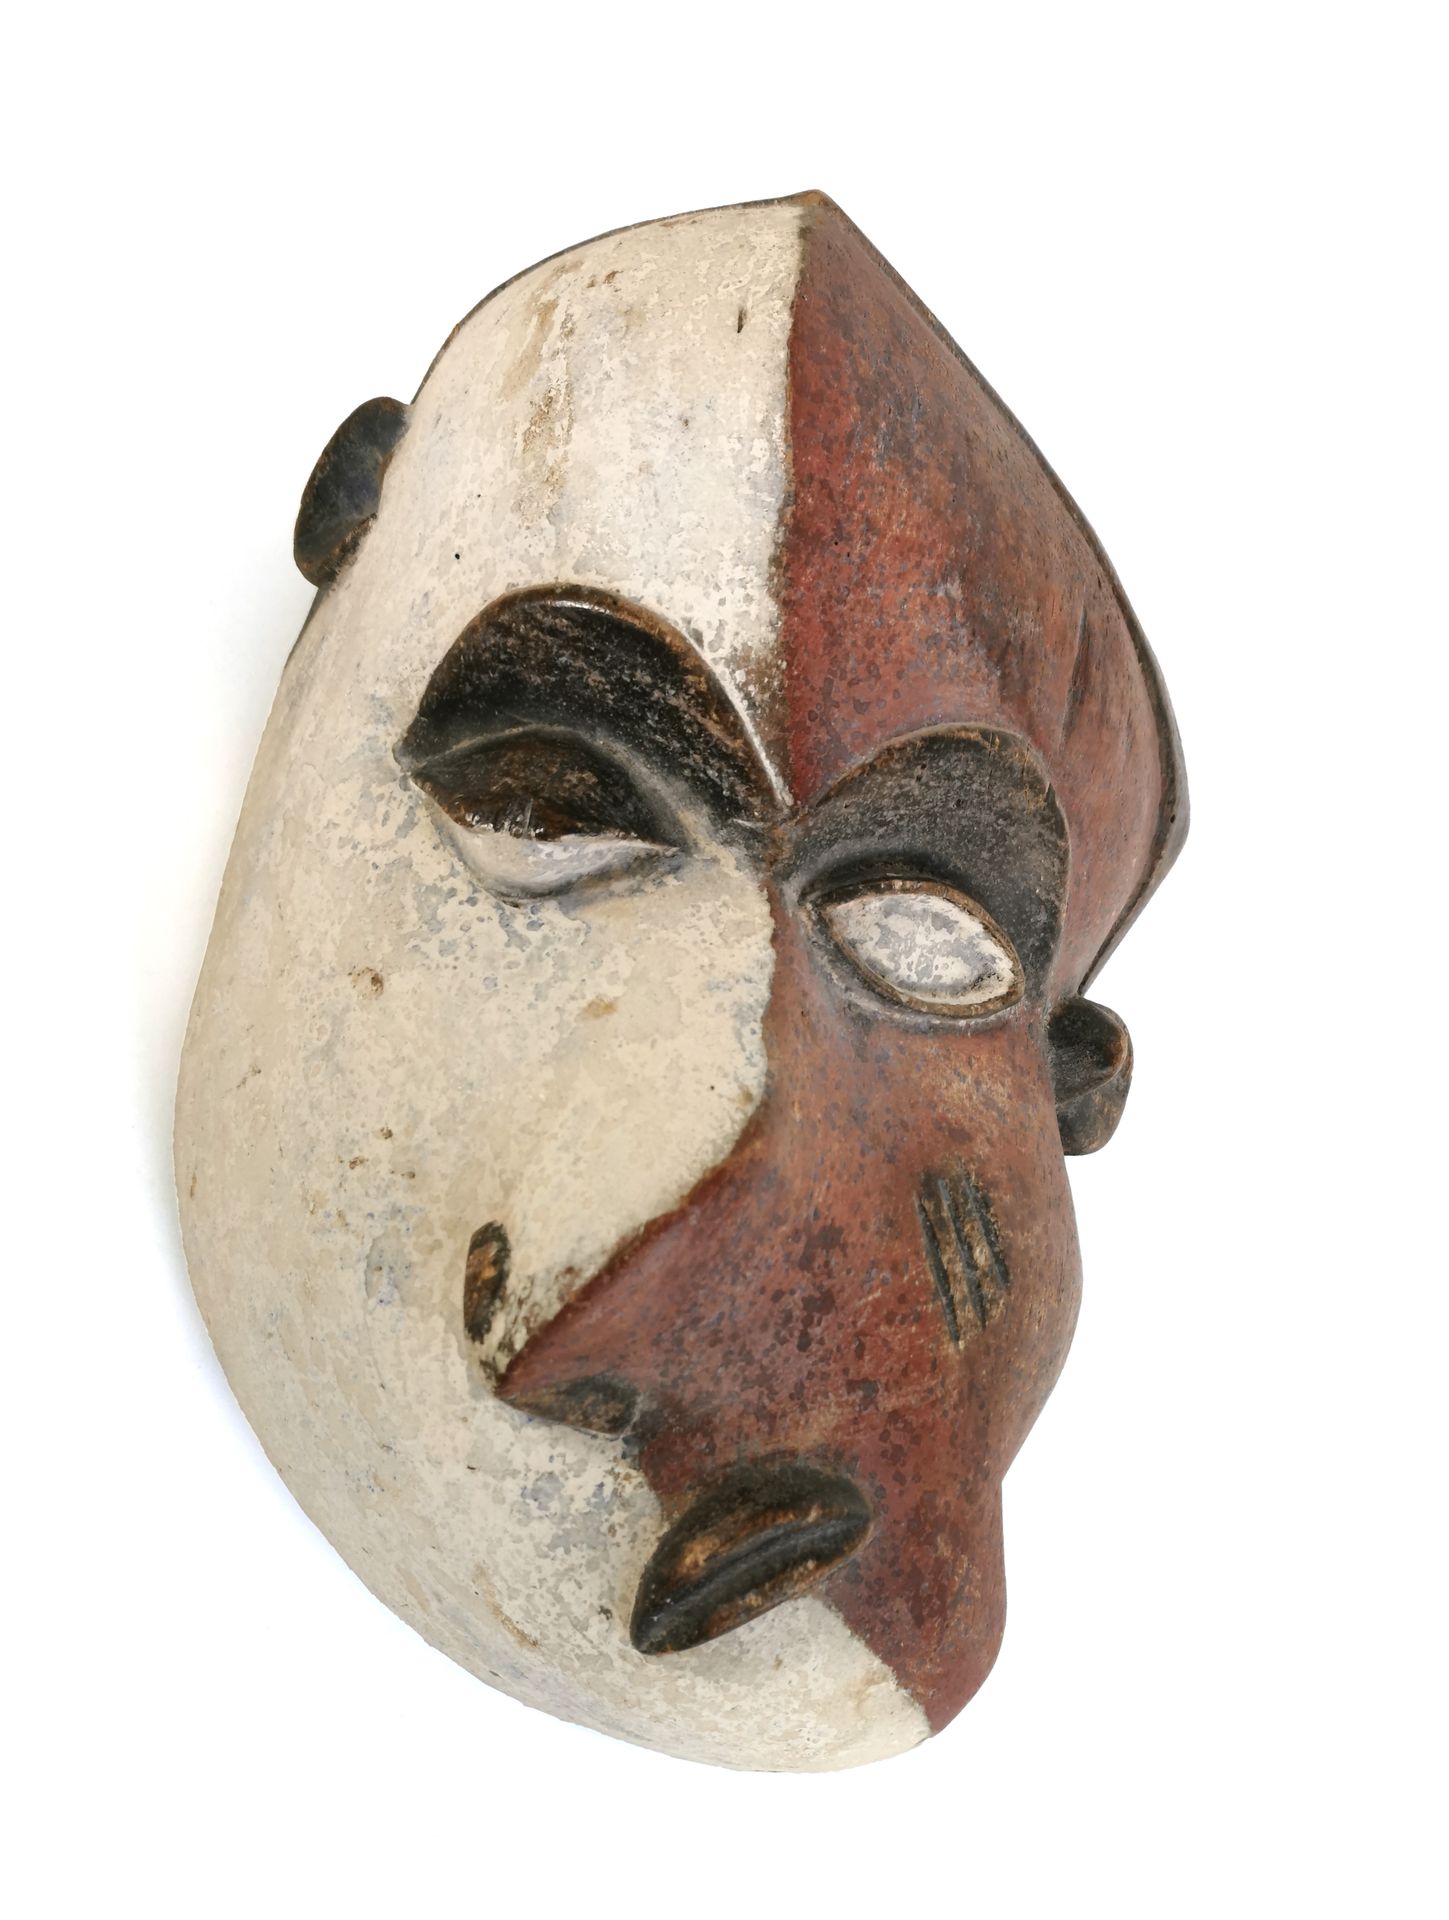 Null Máscara PENDE - República Democrática del Congo

Máscara de "enfermedad" pa&hellip;